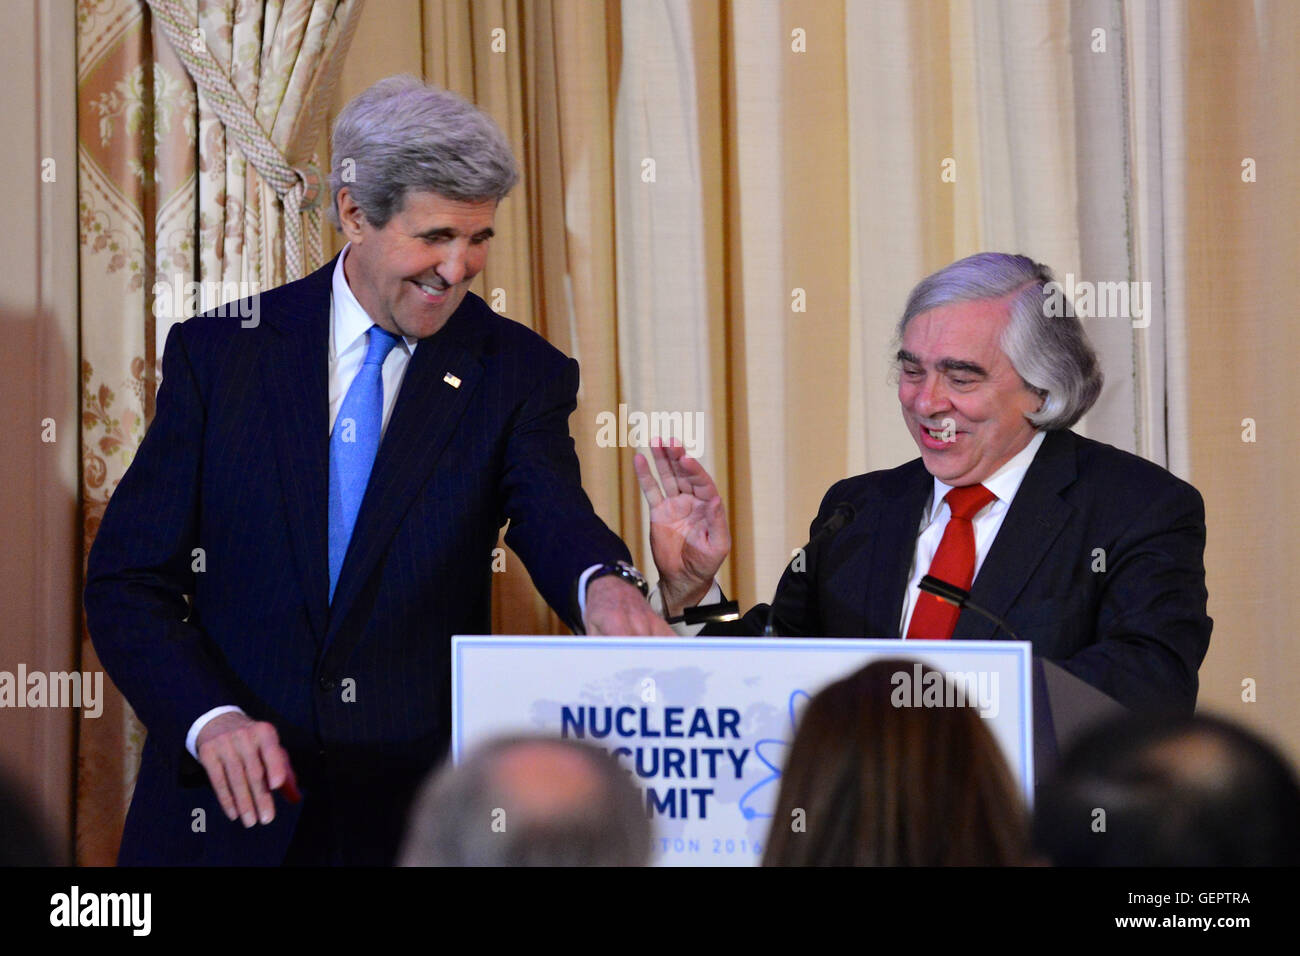 Permet de régler le secrétaire Kerry lutrin comme secrétaire de l'Énergie, Moniz se prépare à prononcer une allocution lors d'un dîner pour les lois sur les Secrétaires 2016 Sommet sur la sécurité nucléaire à Washington Banque D'Images